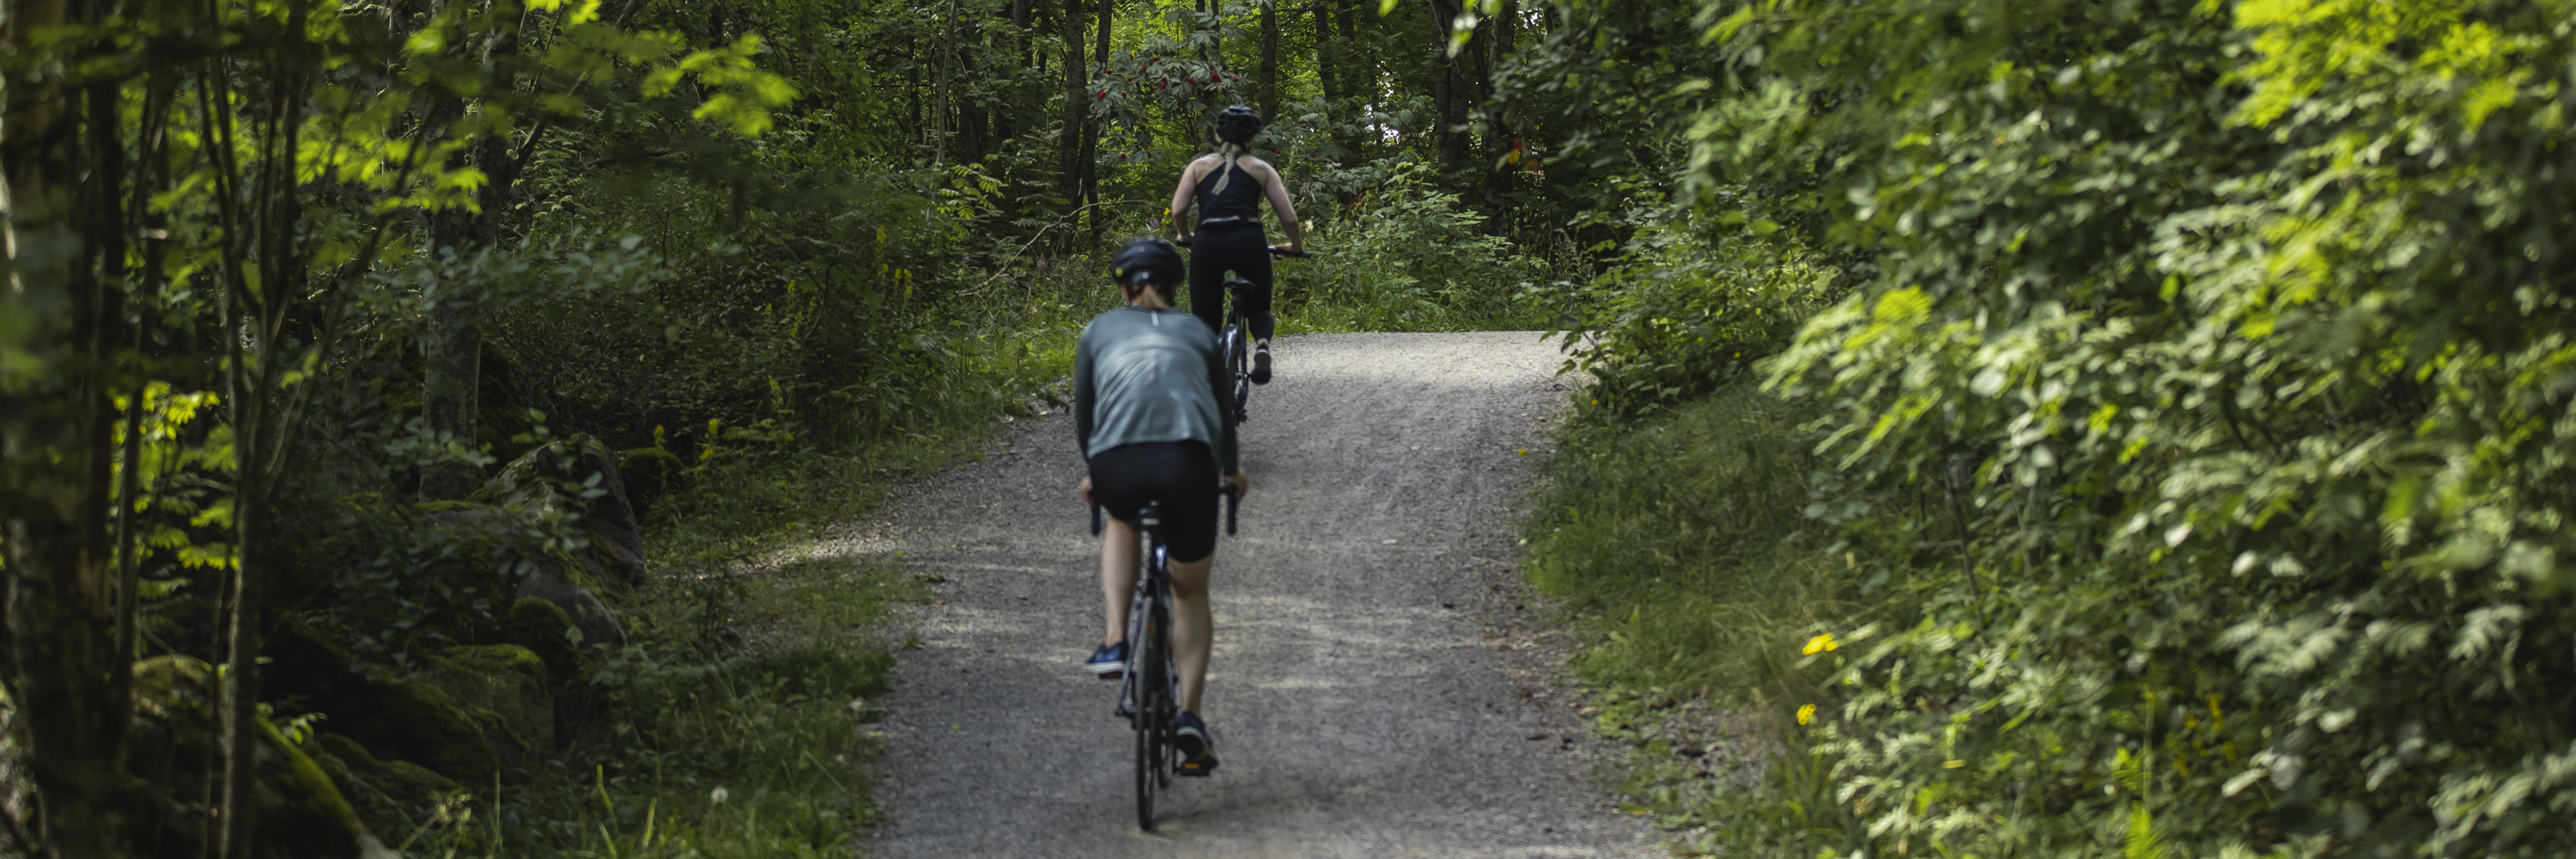 Kaksi pyöräilijää soratiellä metsässä.